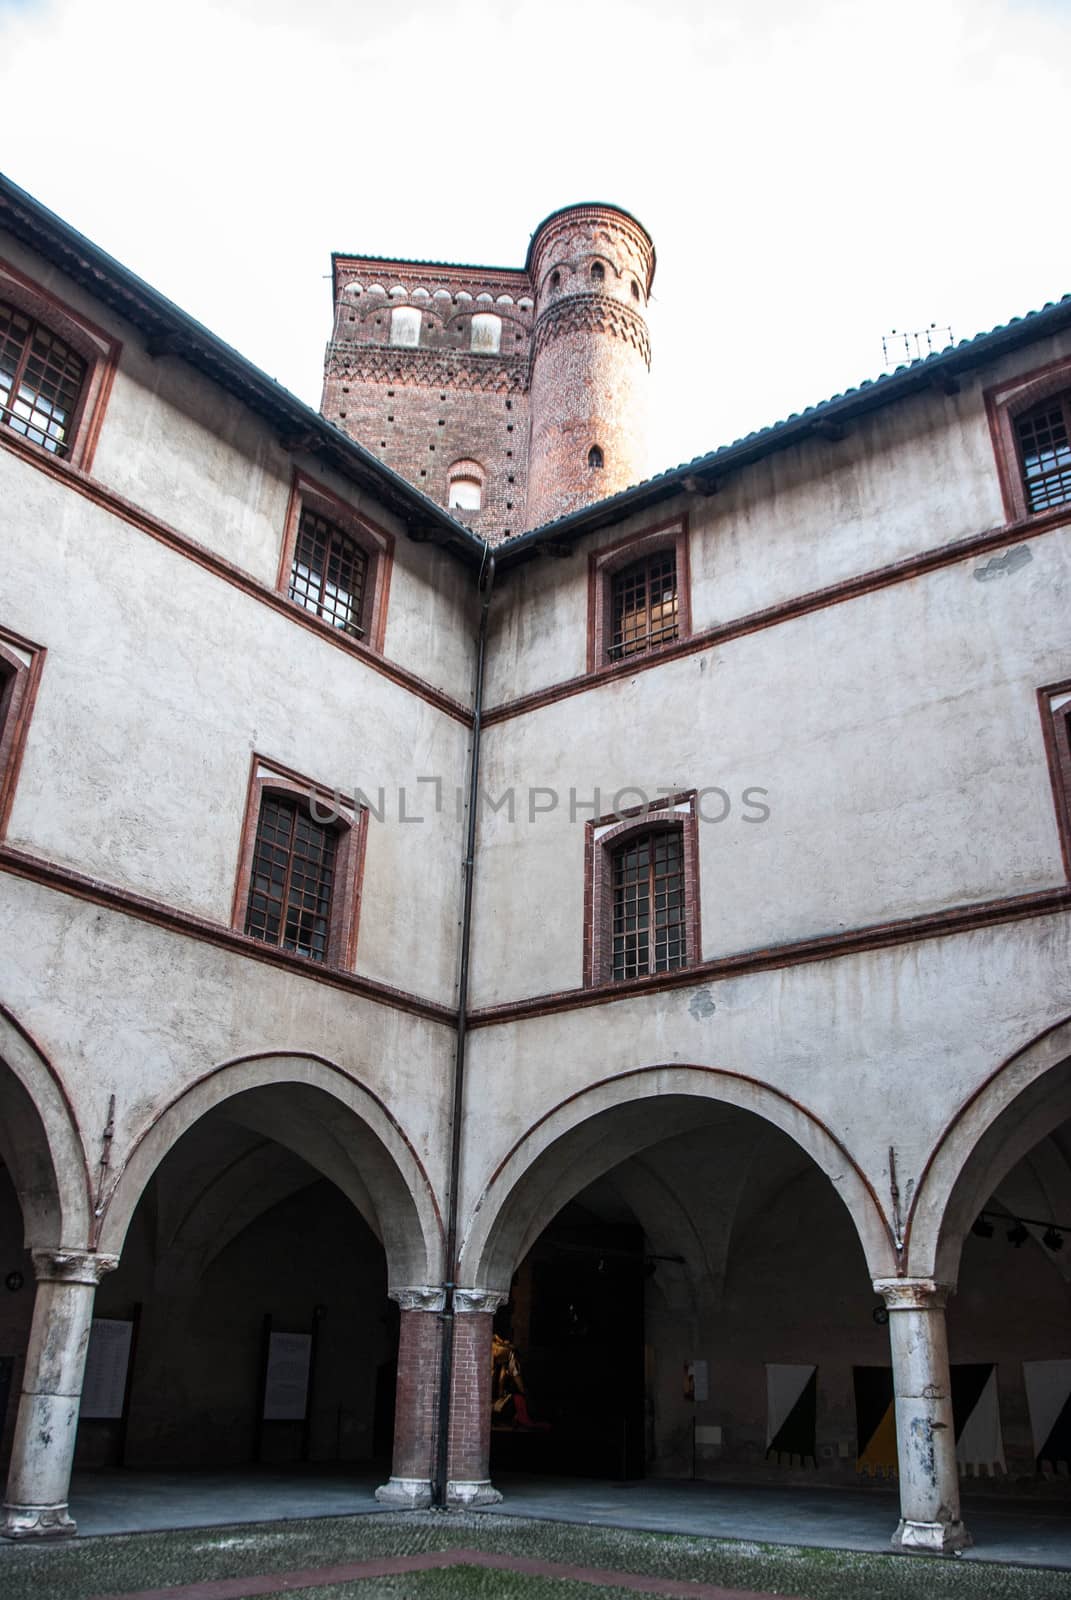 Castle Principles of Acaja, Fossano, Piedmont - Italy by cosca